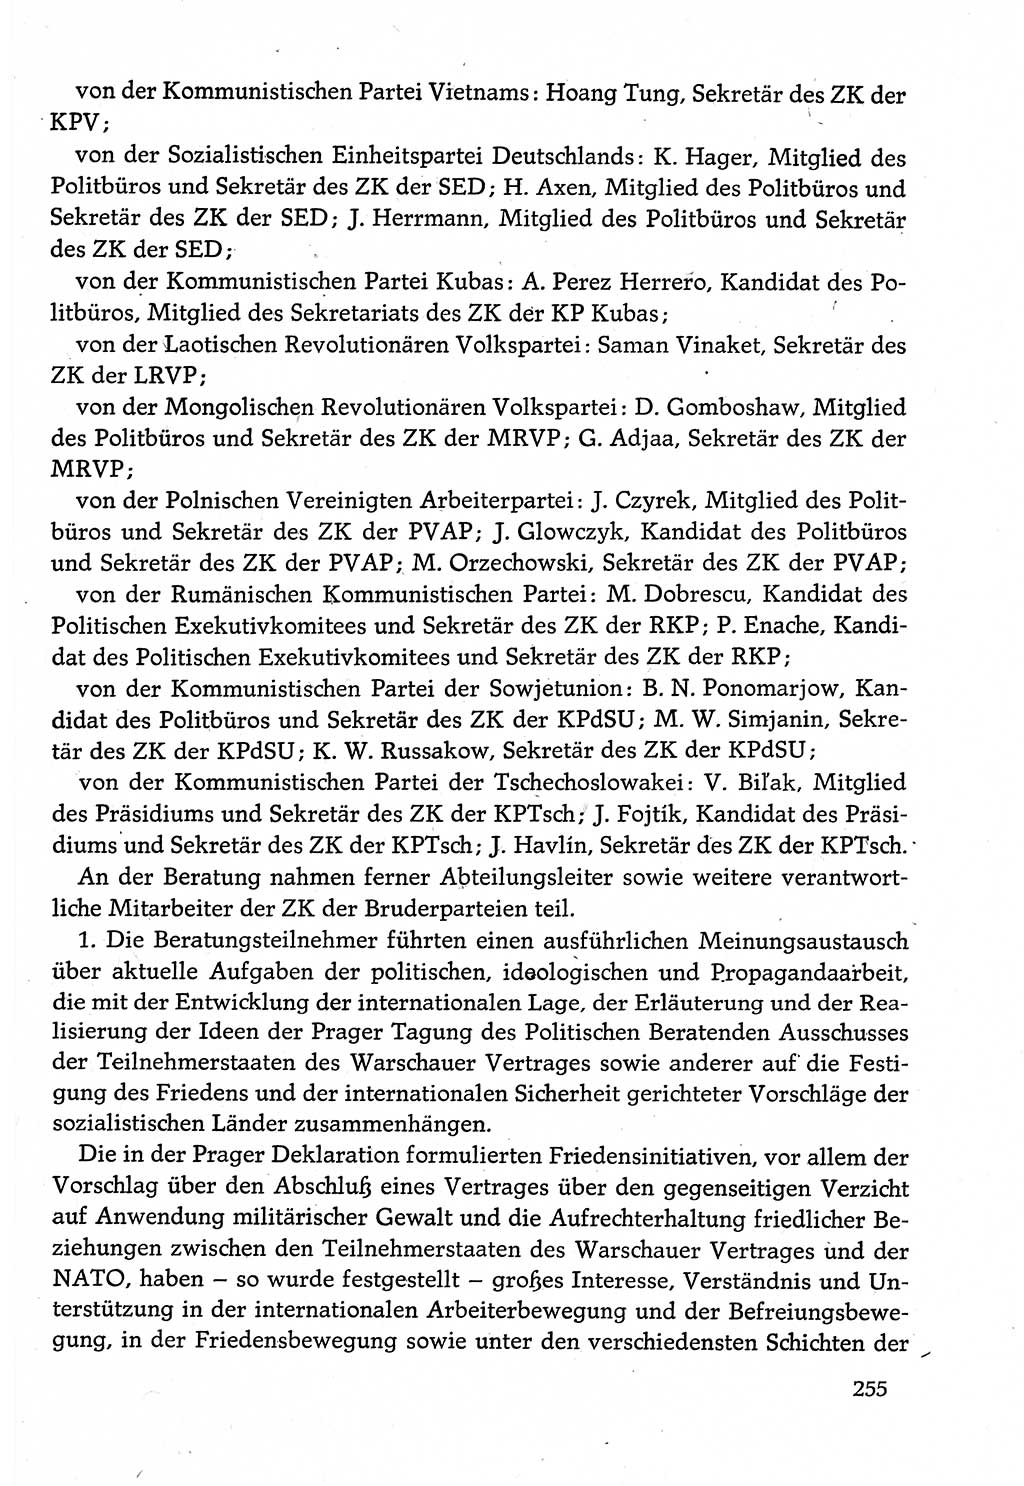 Dokumente der Sozialistischen Einheitspartei Deutschlands (SED) [Deutsche Demokratische Republik (DDR)] 1982-1983, Seite 255 (Dok. SED DDR 1982-1983, S. 255)